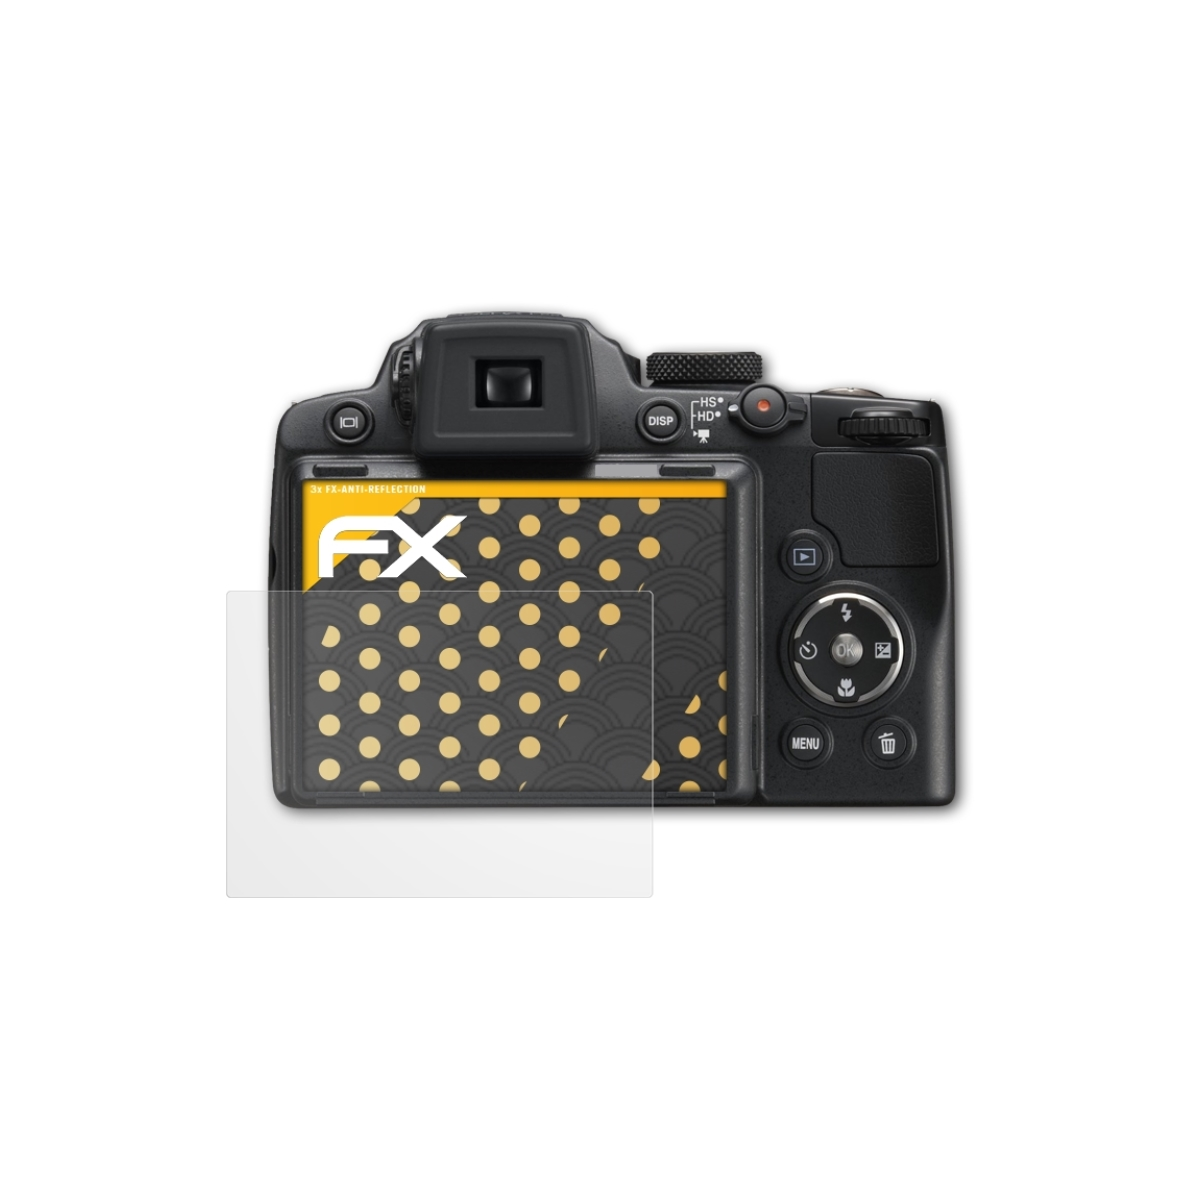 ATFOLIX 3x P500) FX-Antireflex Coolpix Nikon Displayschutz(für